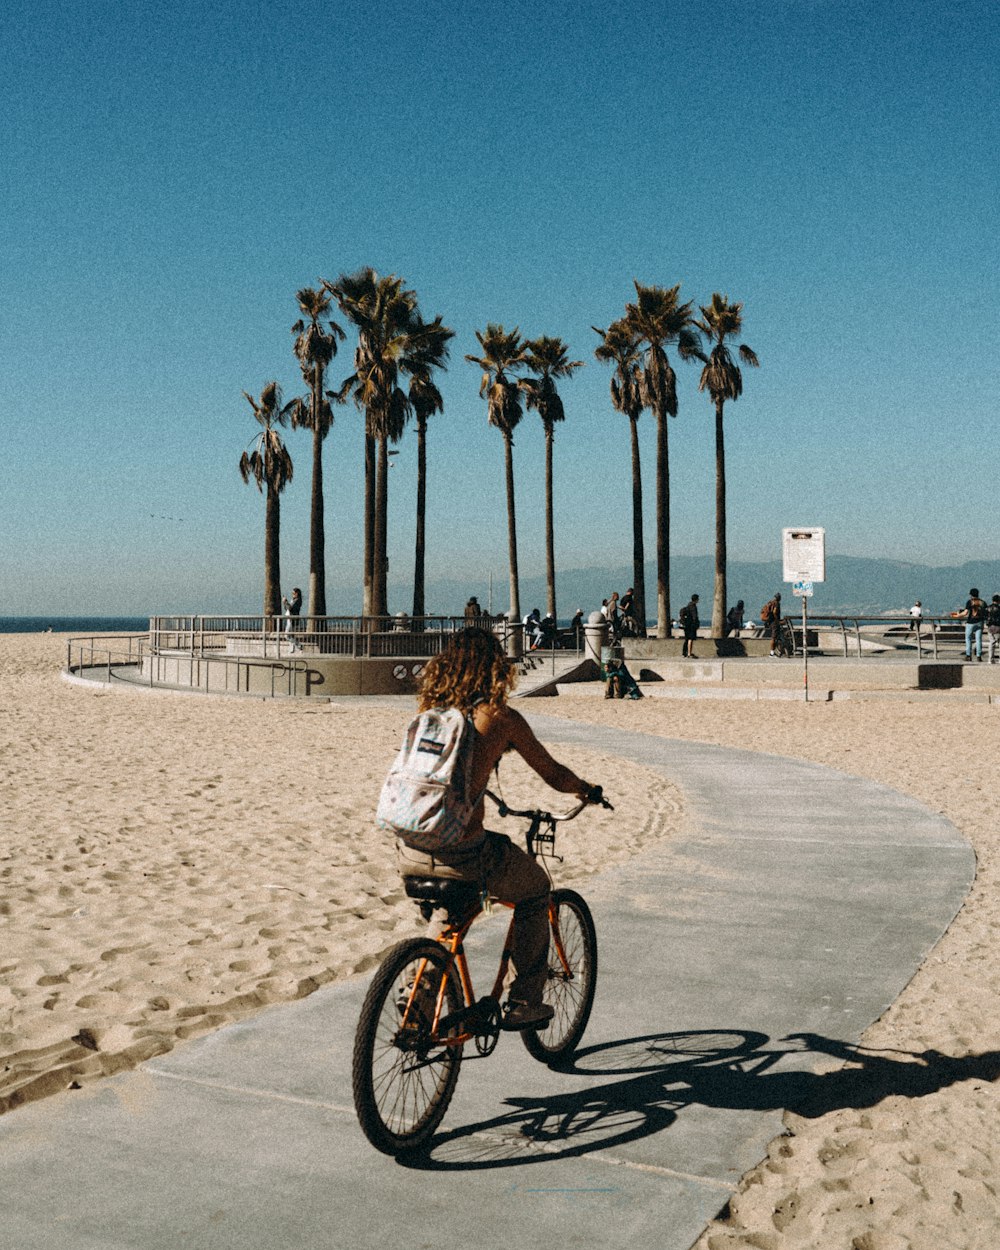 a woman riding a bike down a sidewalk next to palm trees